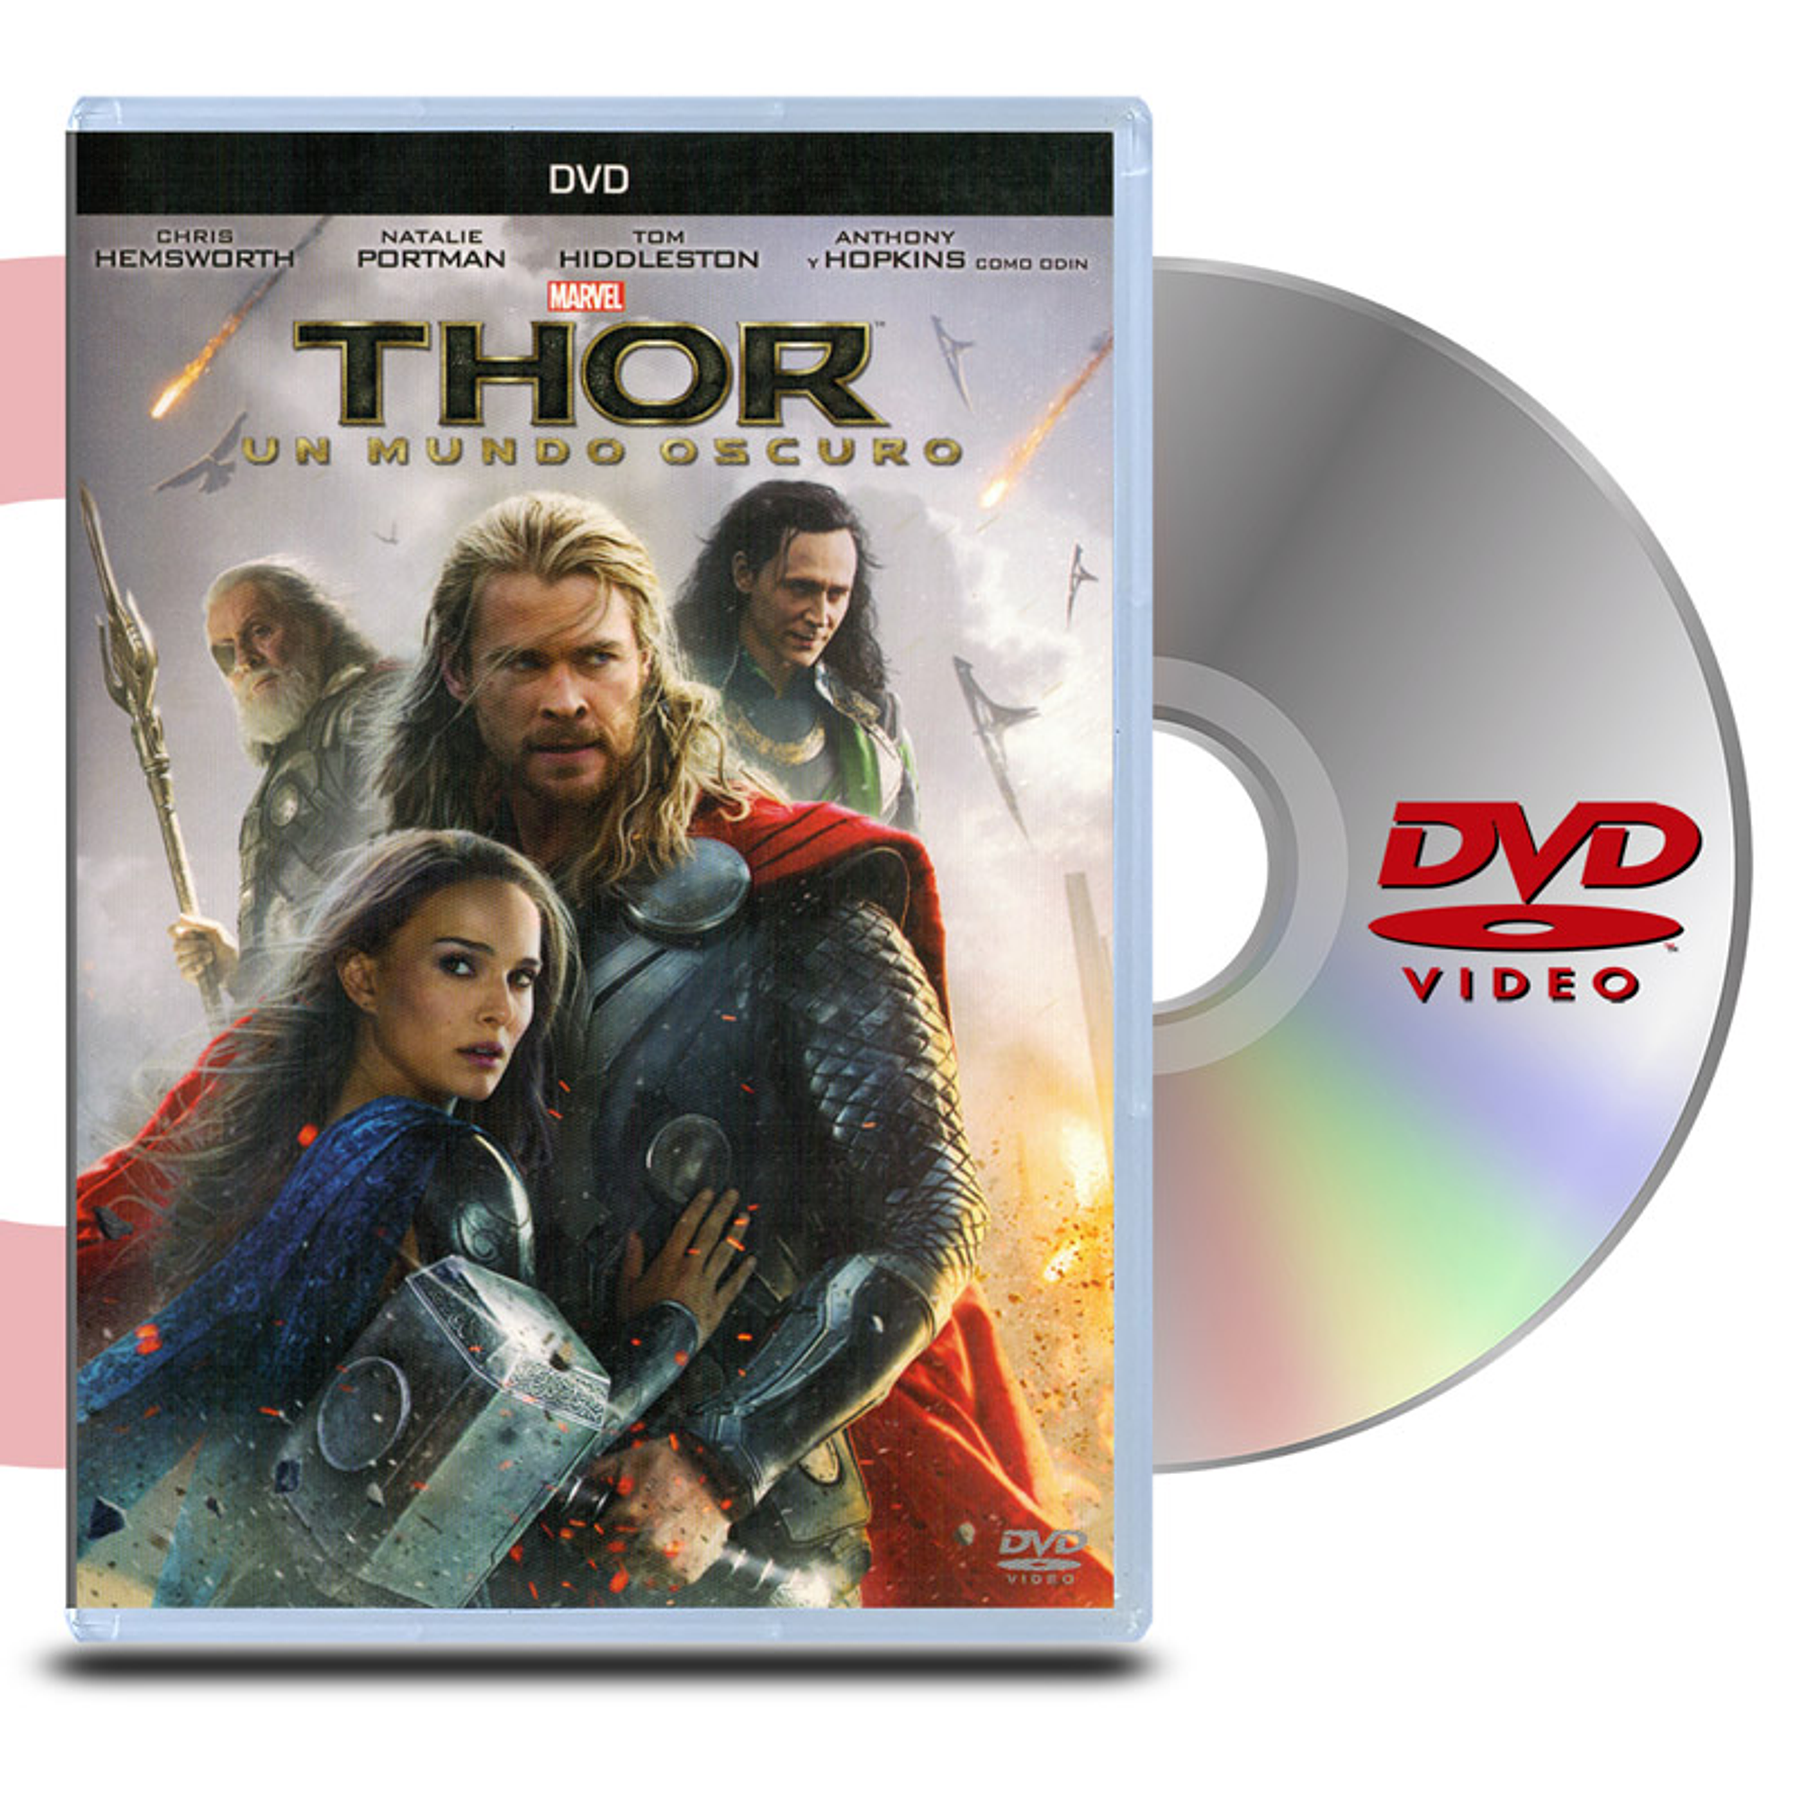 DVD Thor 2 Un Mundo Oscuro